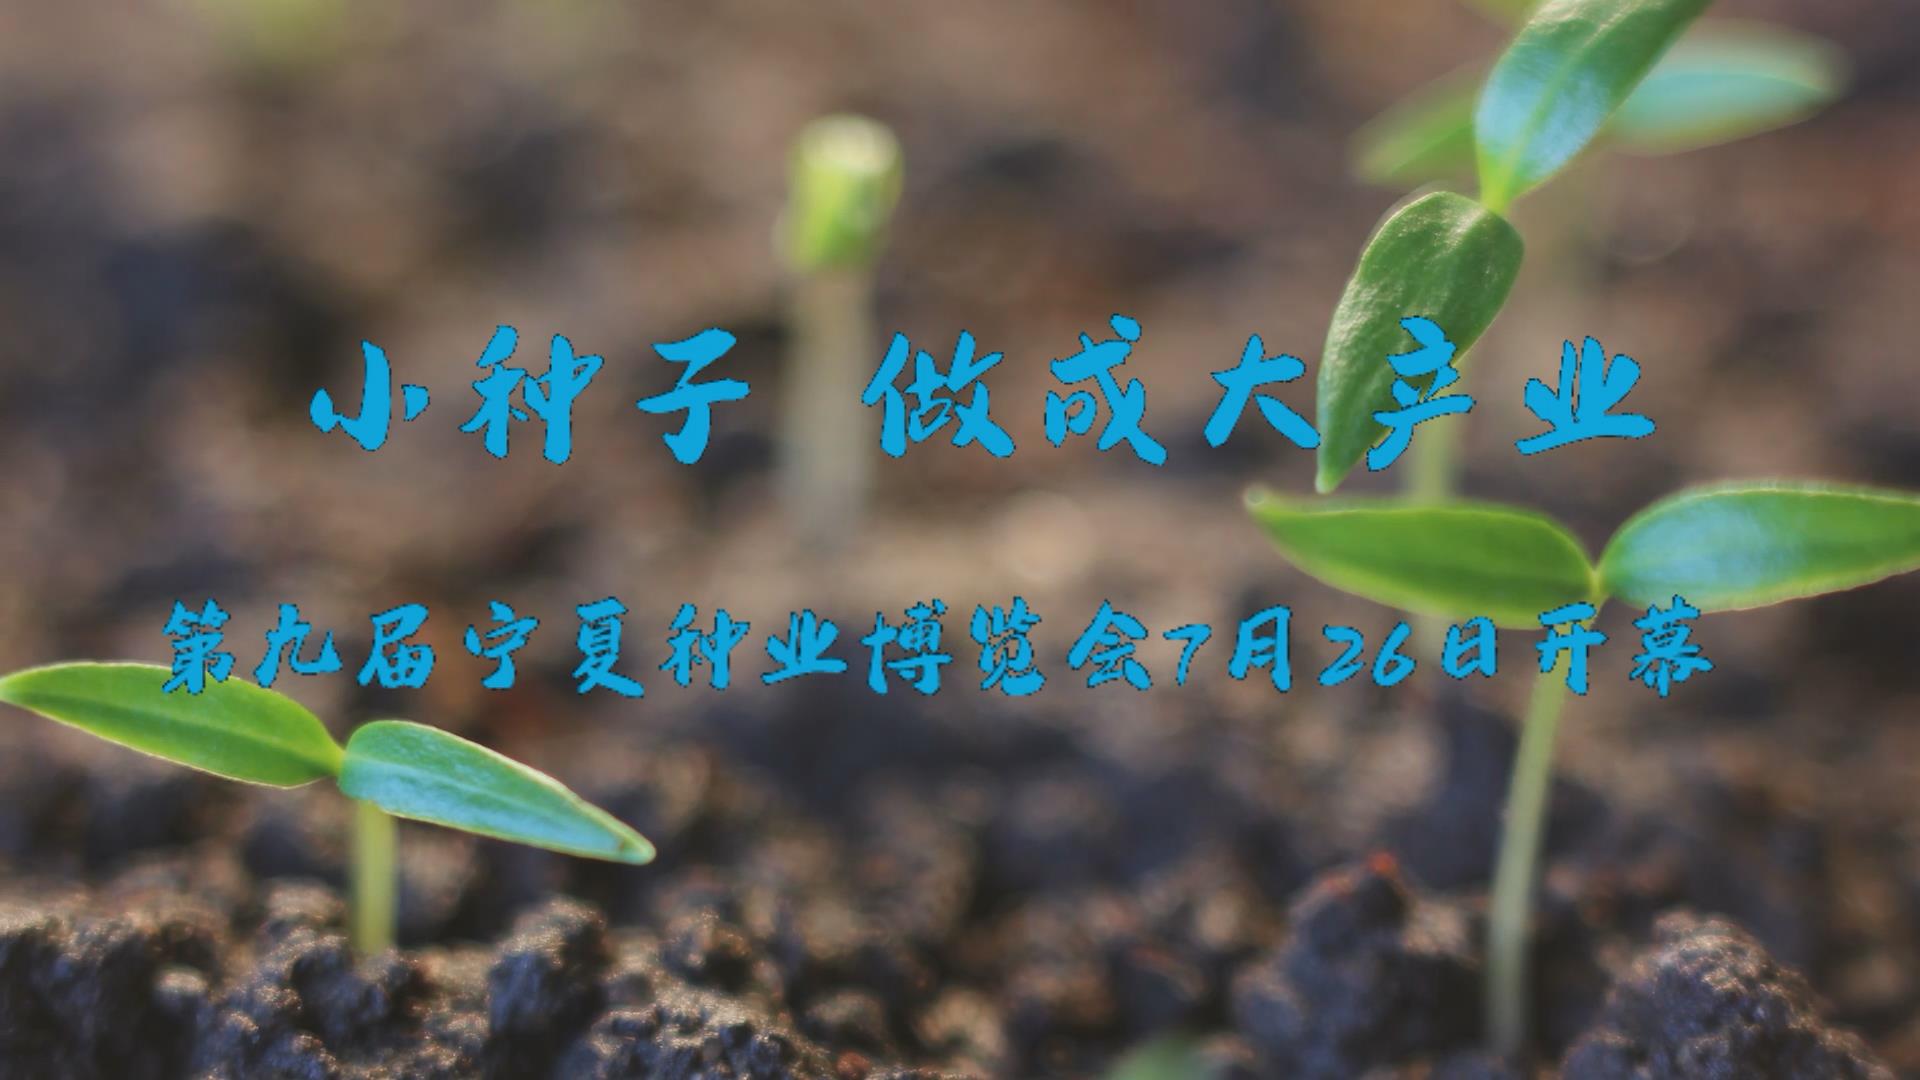 小种子做成大产业 第九届宁夏种业博览会7月26日开幕